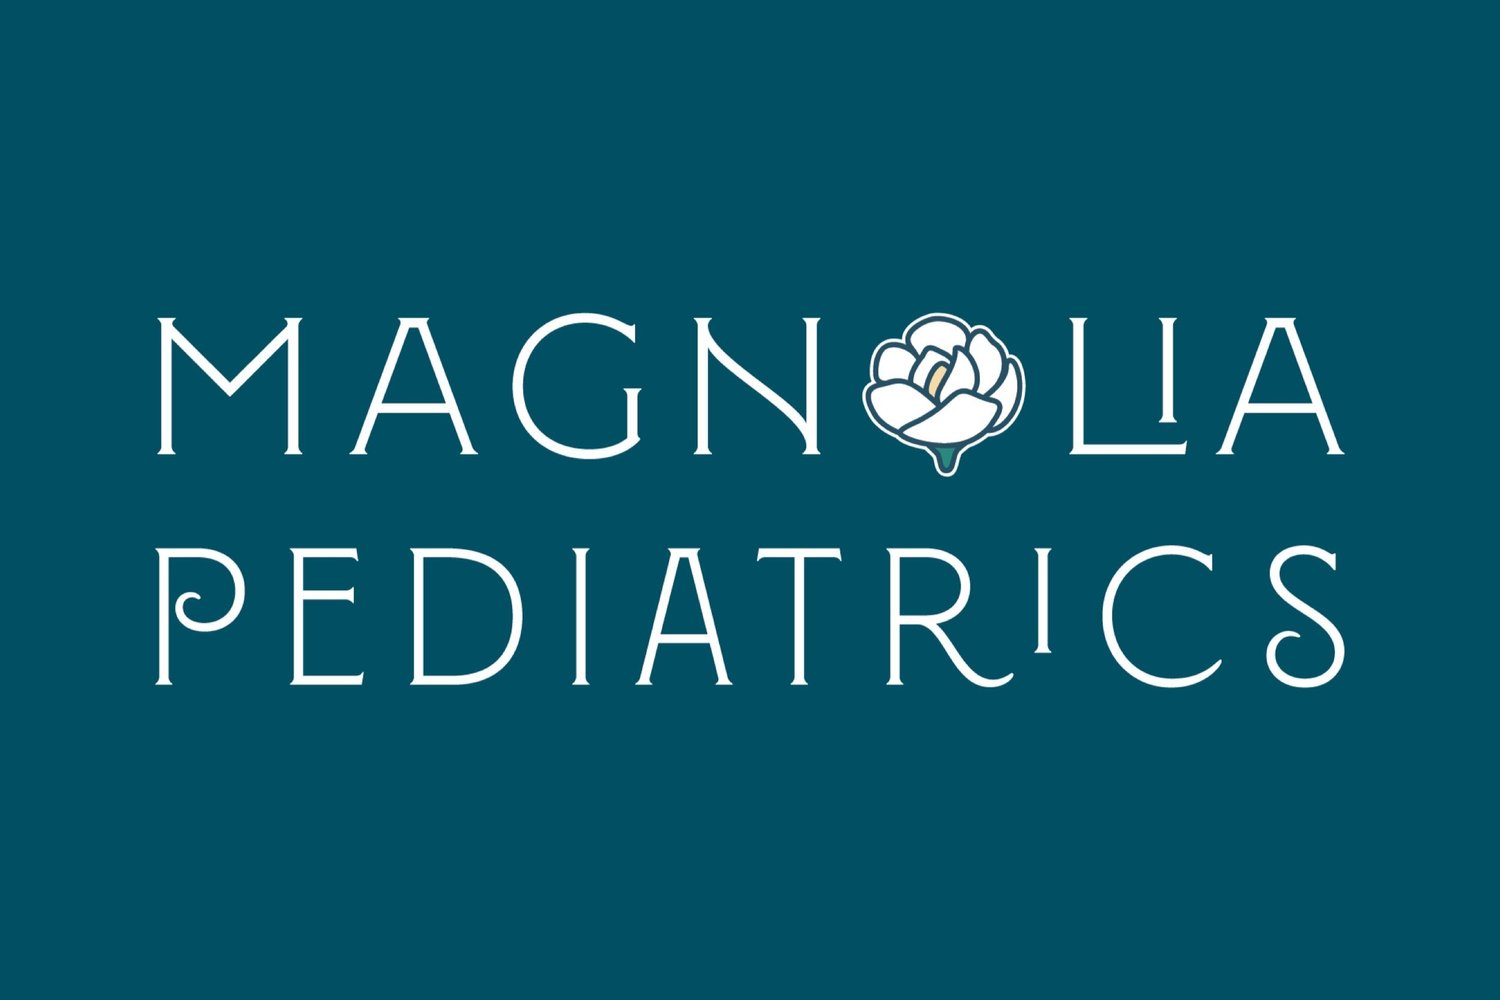 Magnolia Pediatrics of Virginia